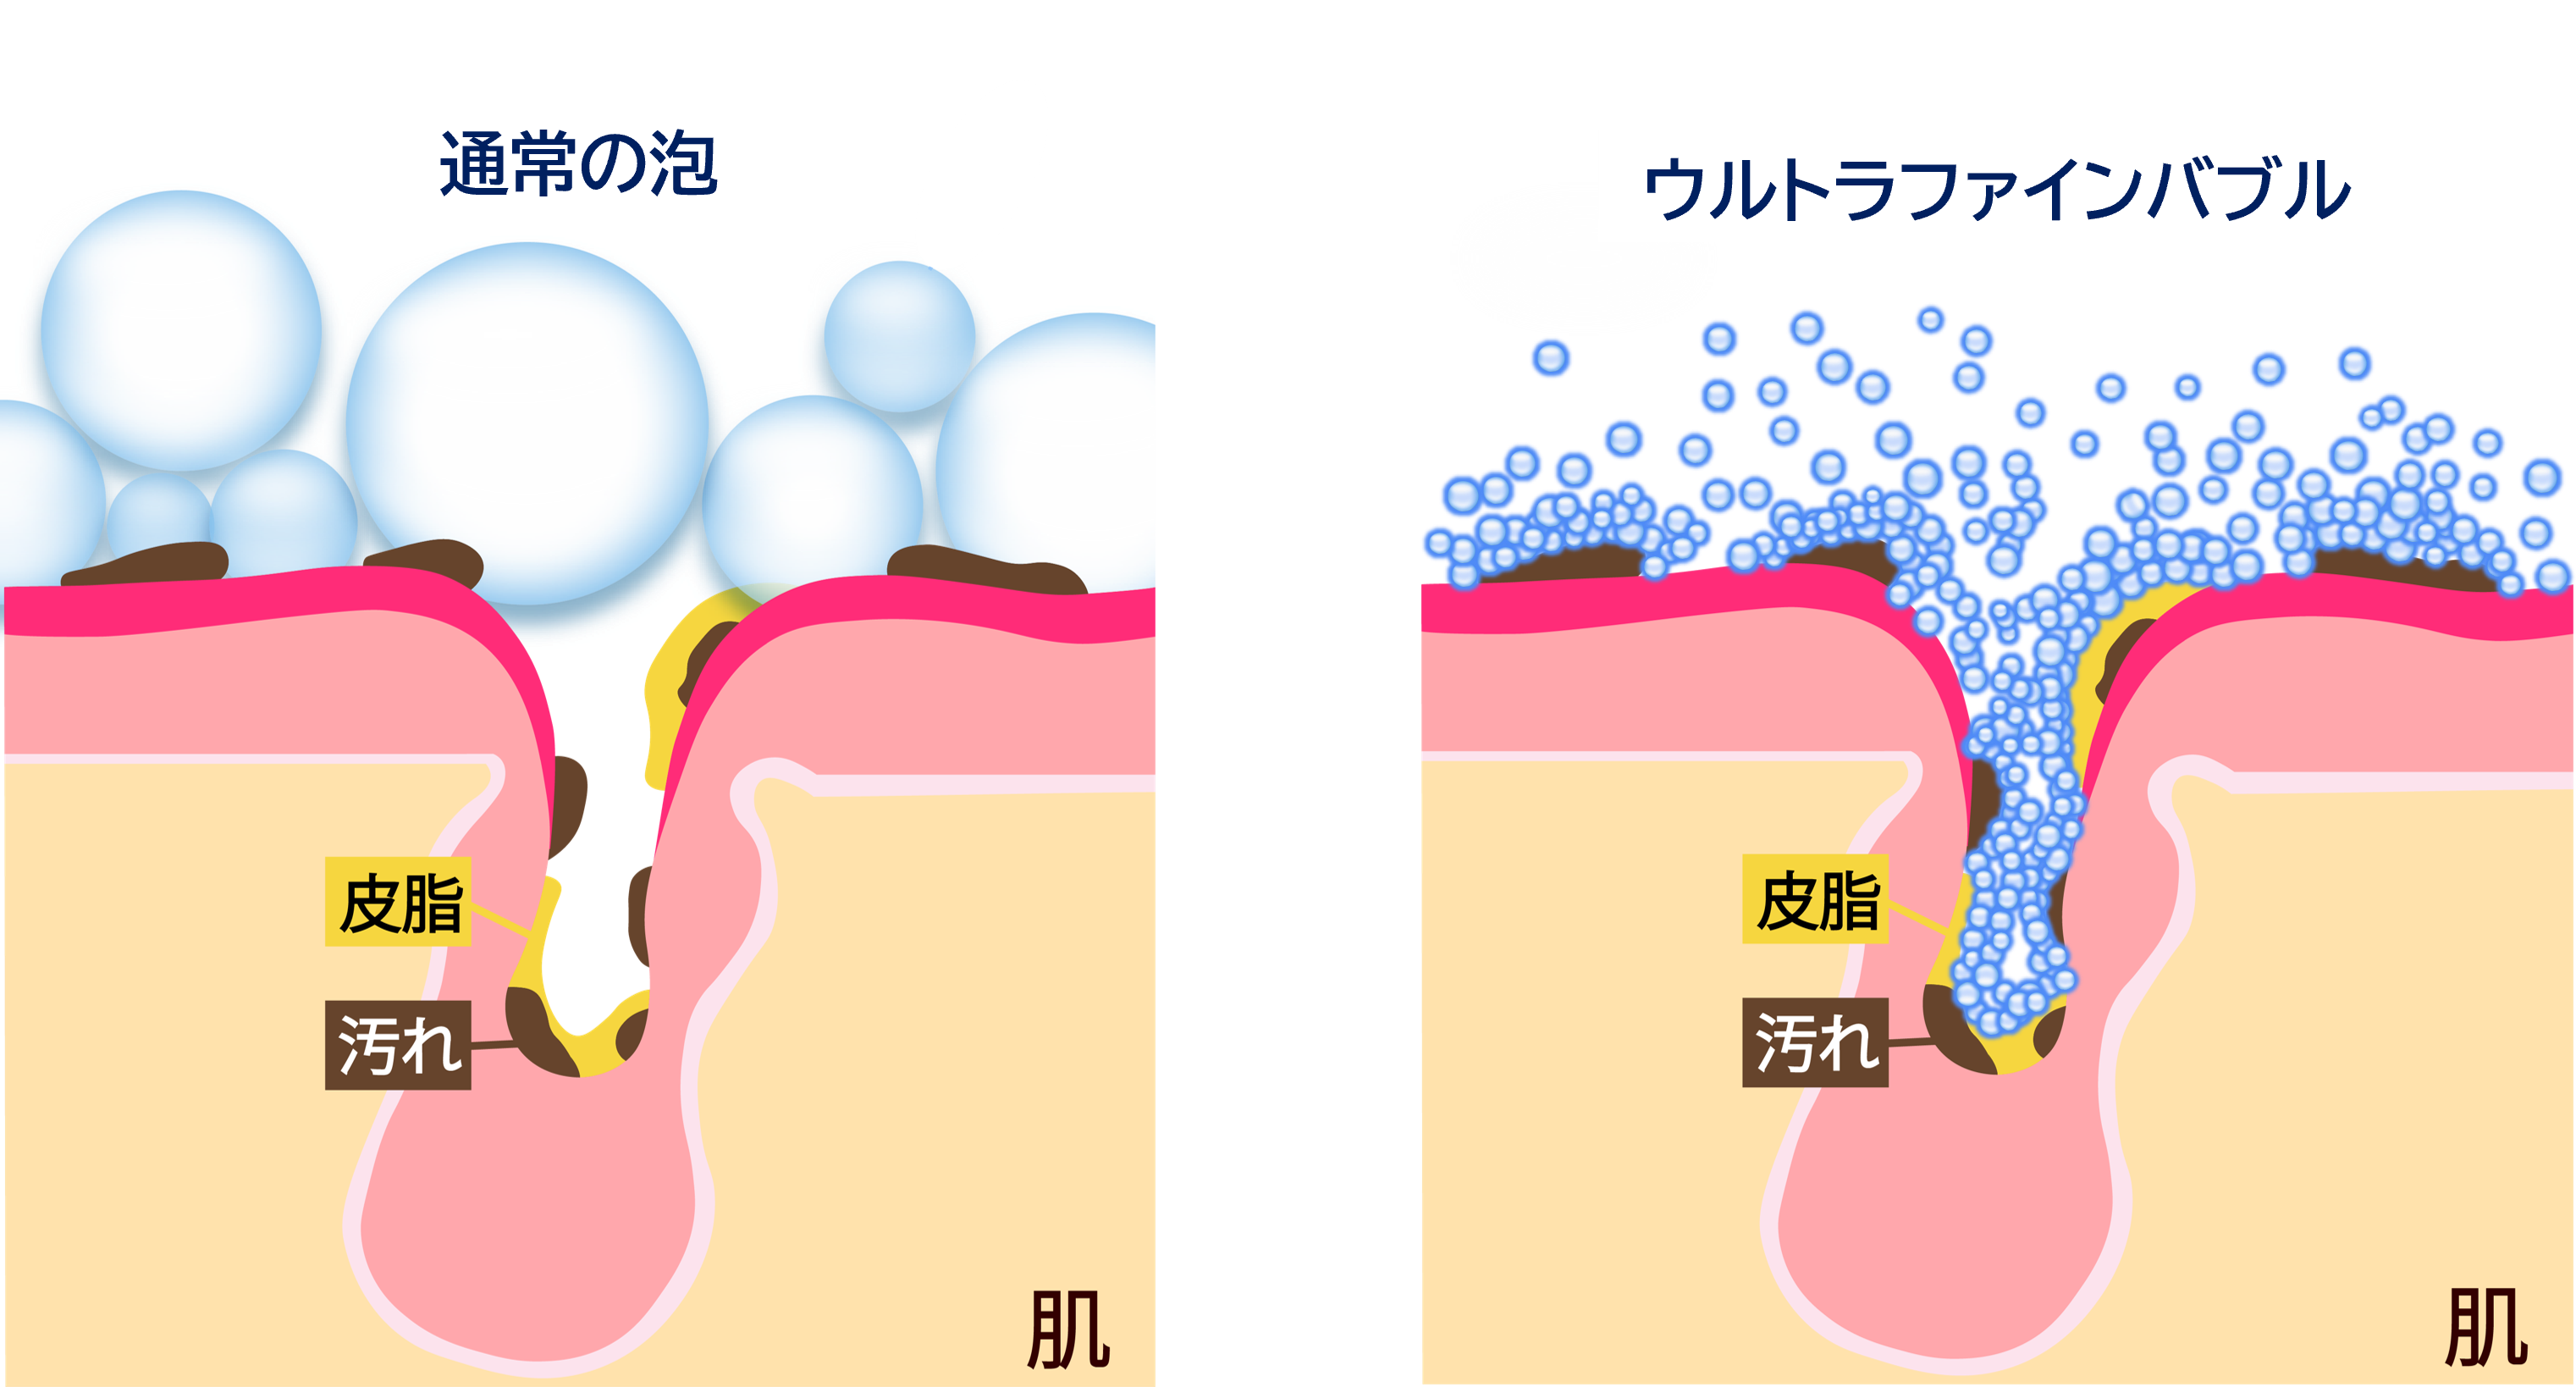 お肌とウルトラファインバブル、通常の泡のイメージ図